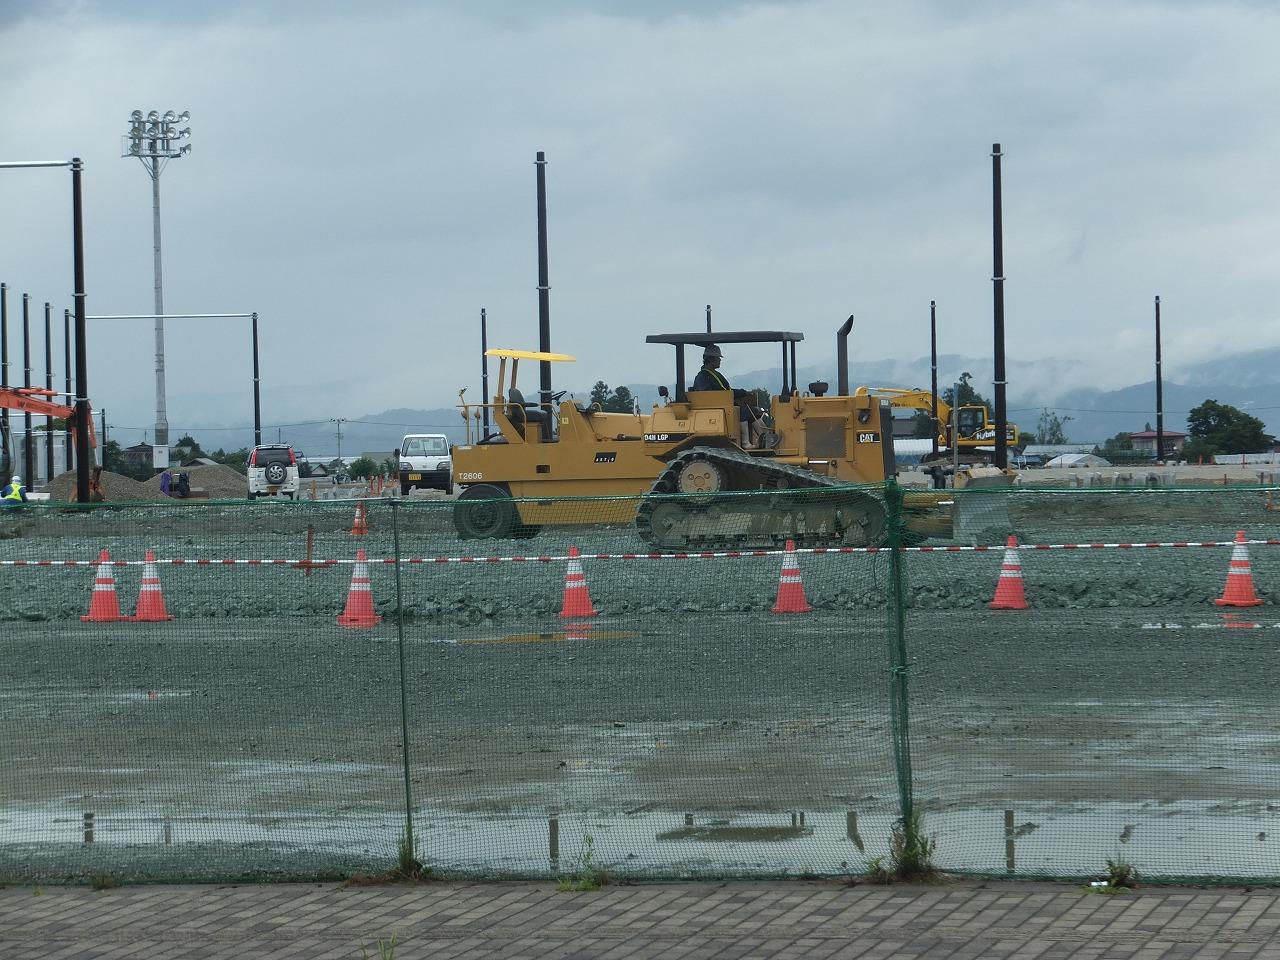 総合運動公園に米沢初の芝サッカー場建設工事